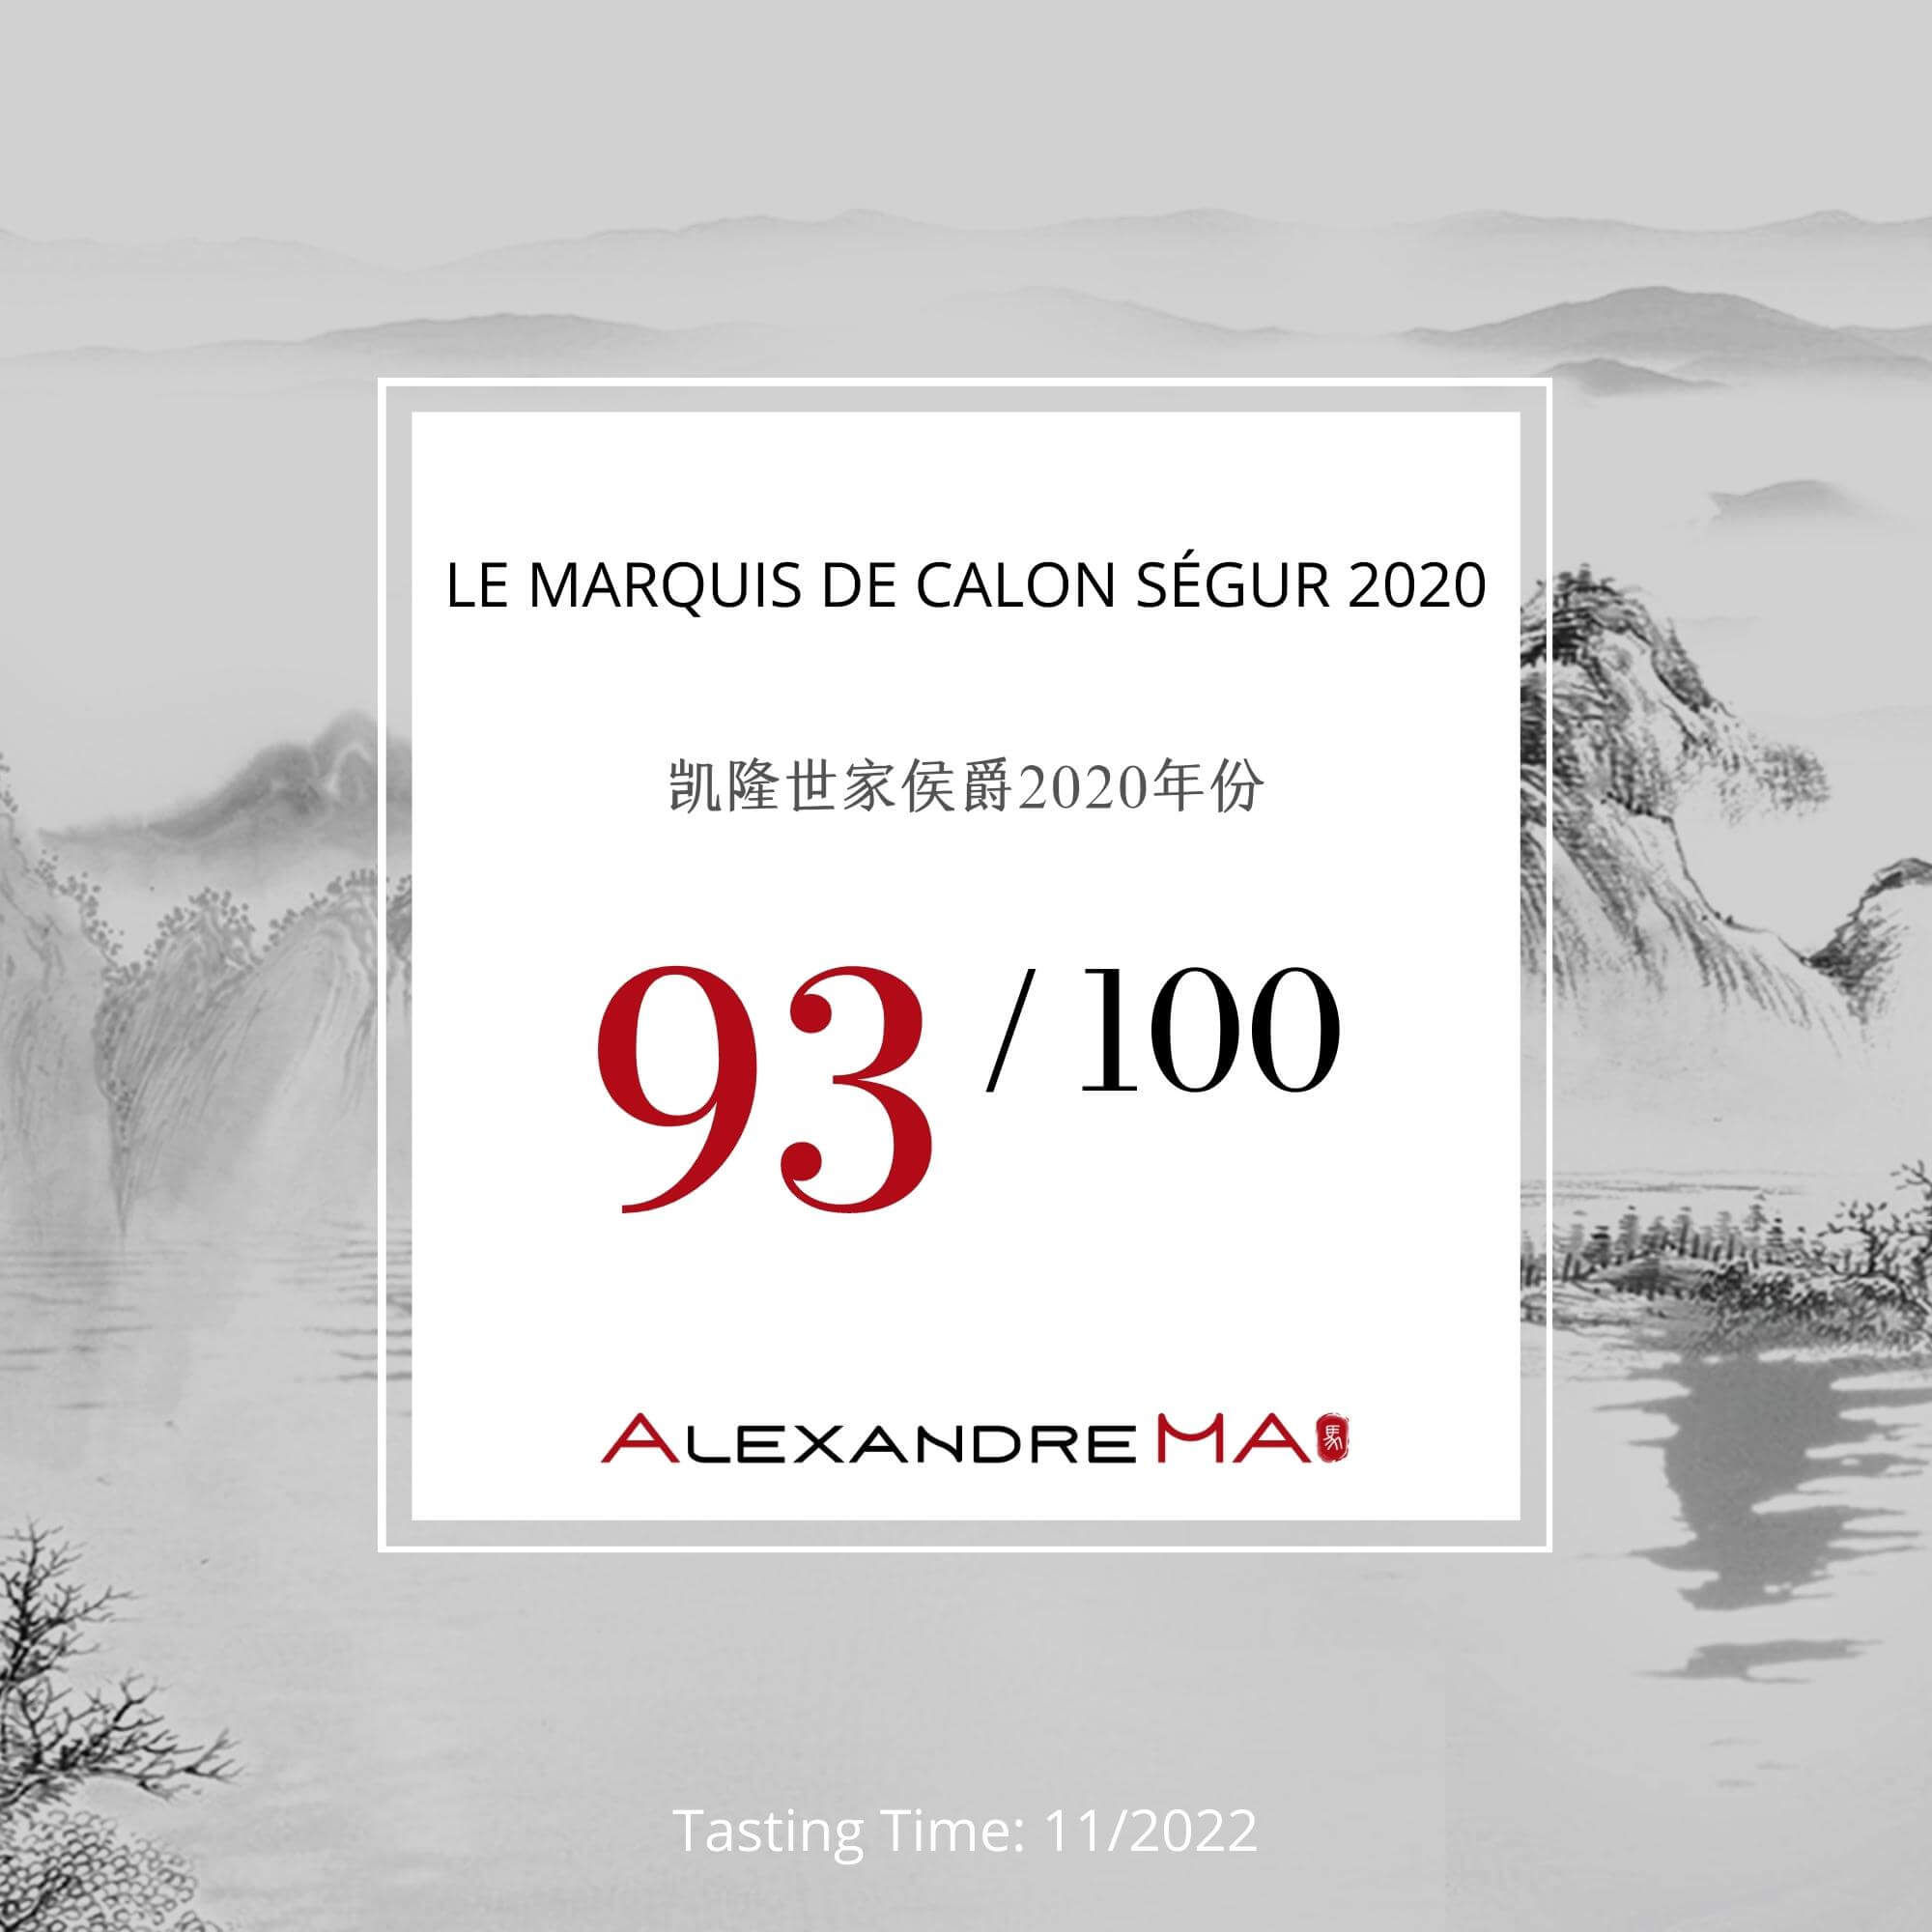 Le Marquis de Calon Ségur 2020 凯隆世家侯爵 - Alexandre Ma